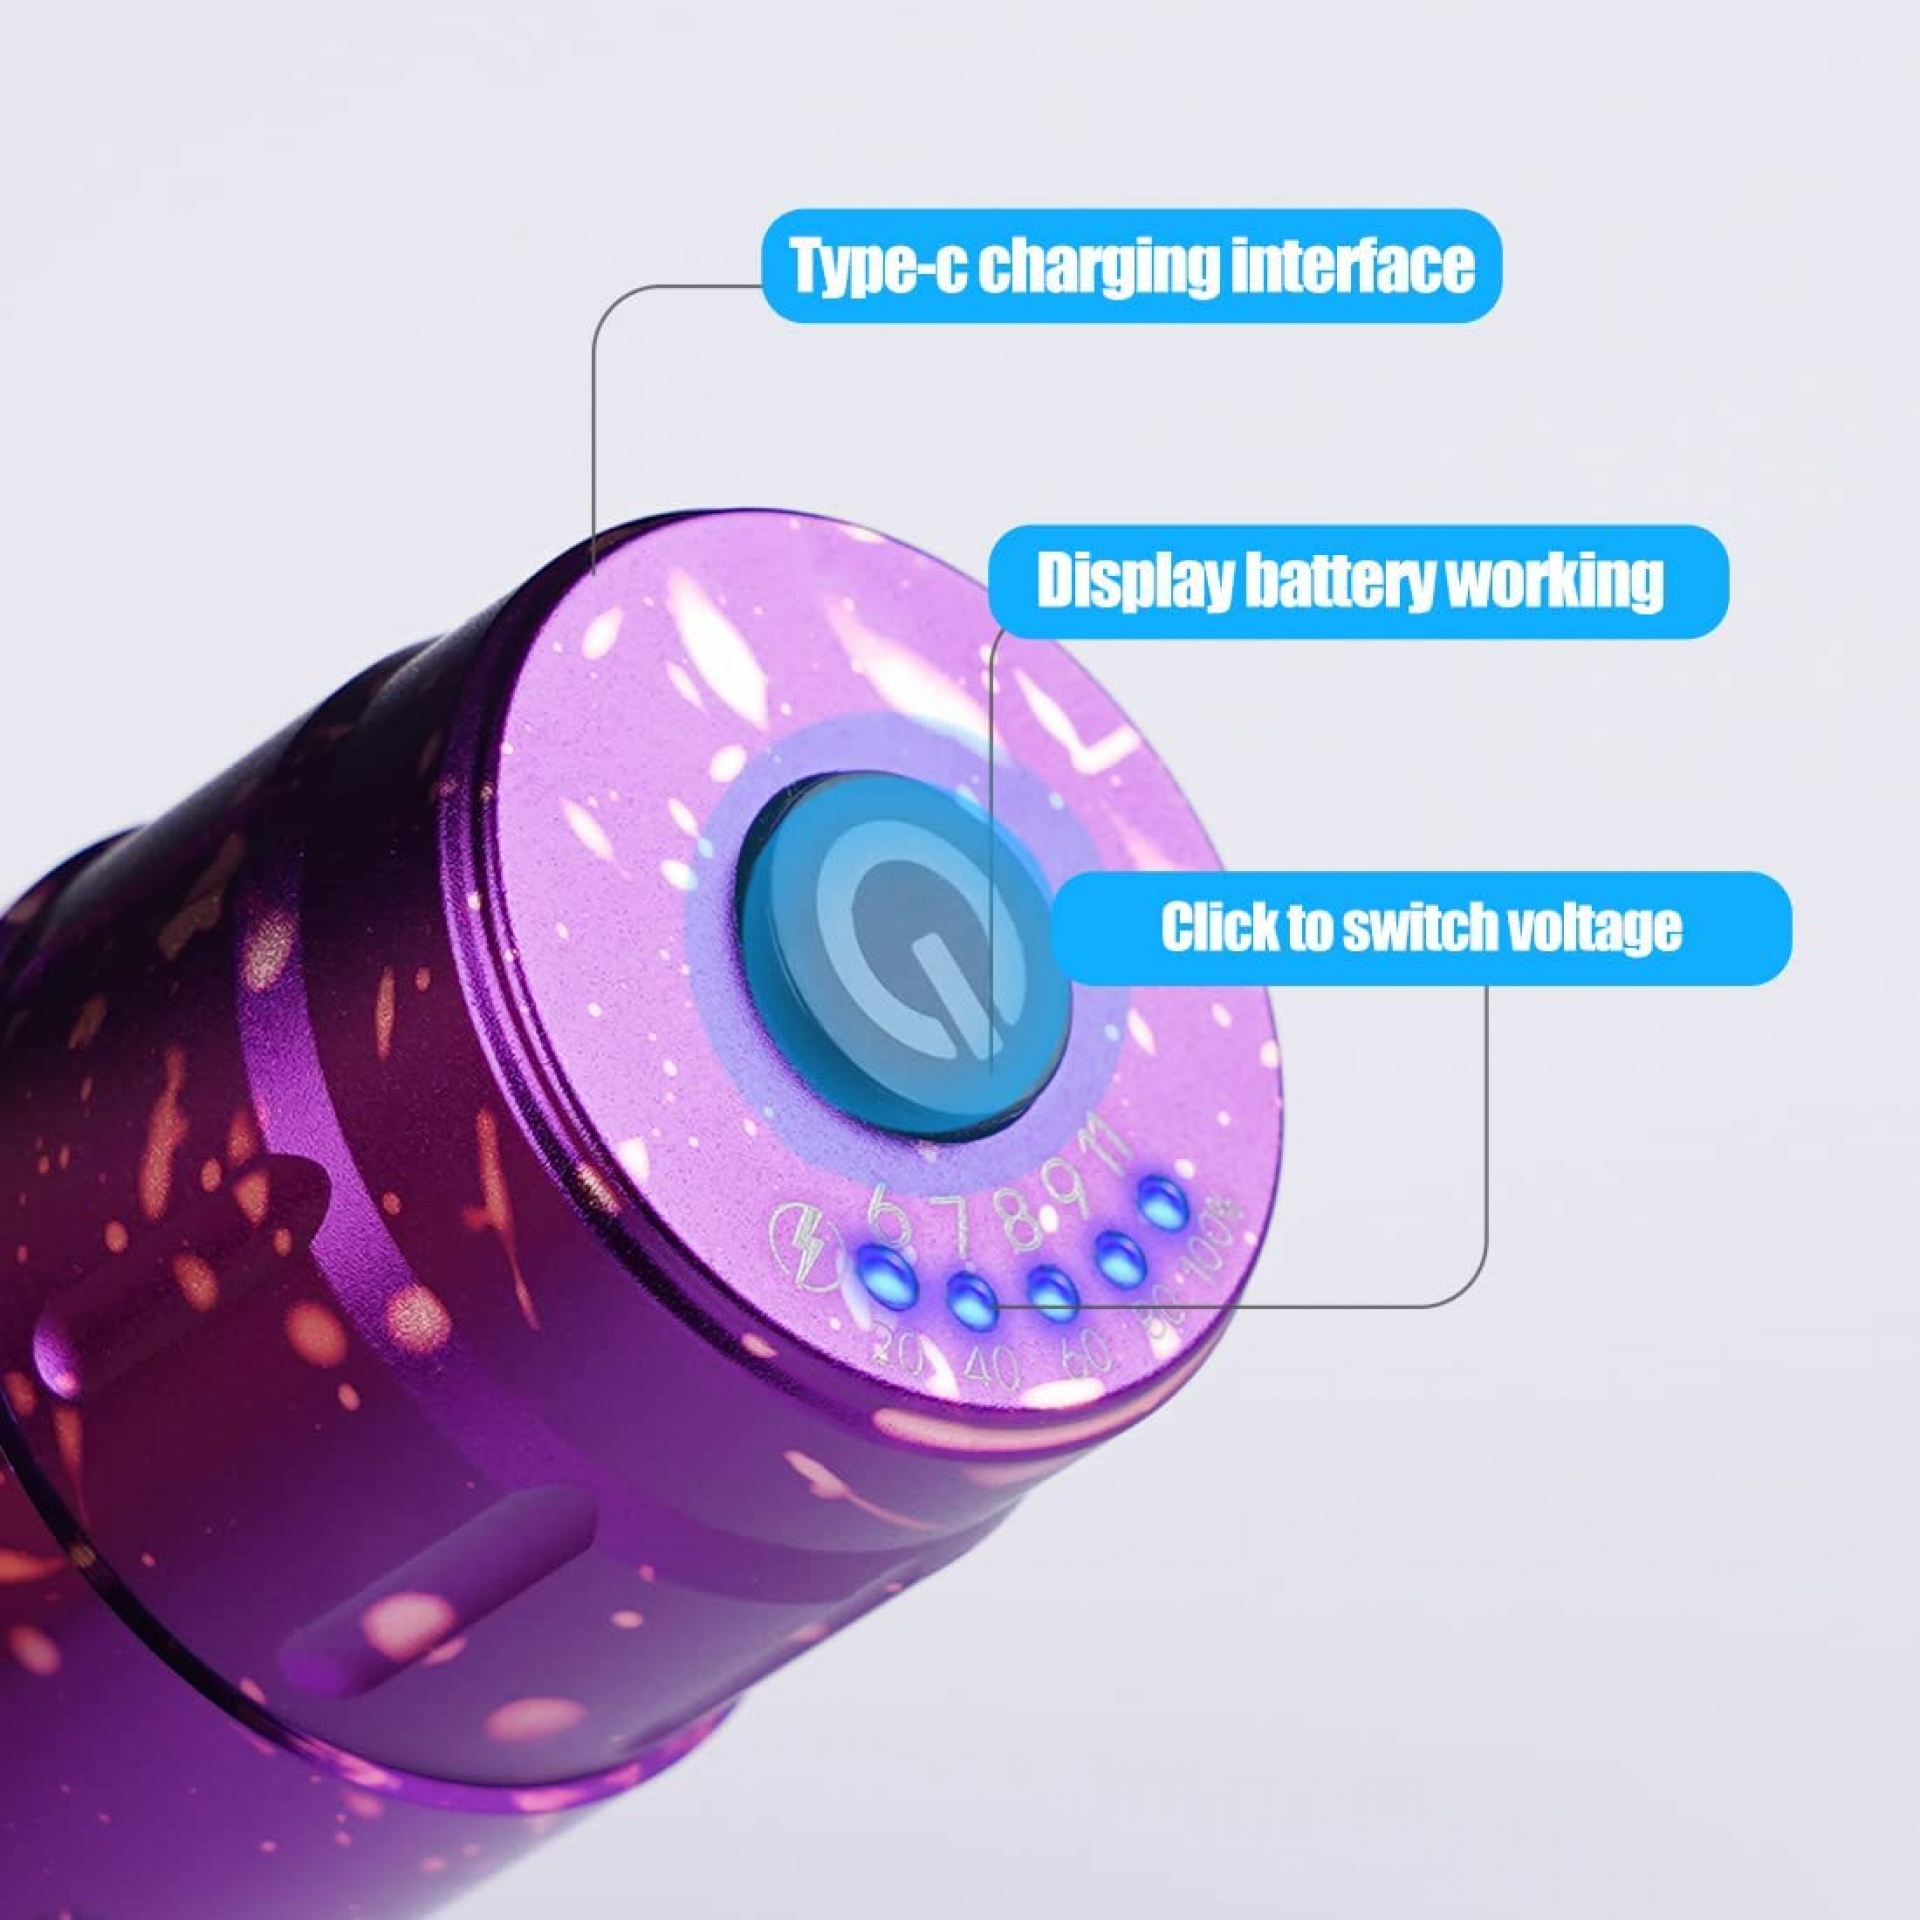 MAST TOUR Mini Tetoválógép lila színben (Vezetéknélküli) + Akkumulátor 